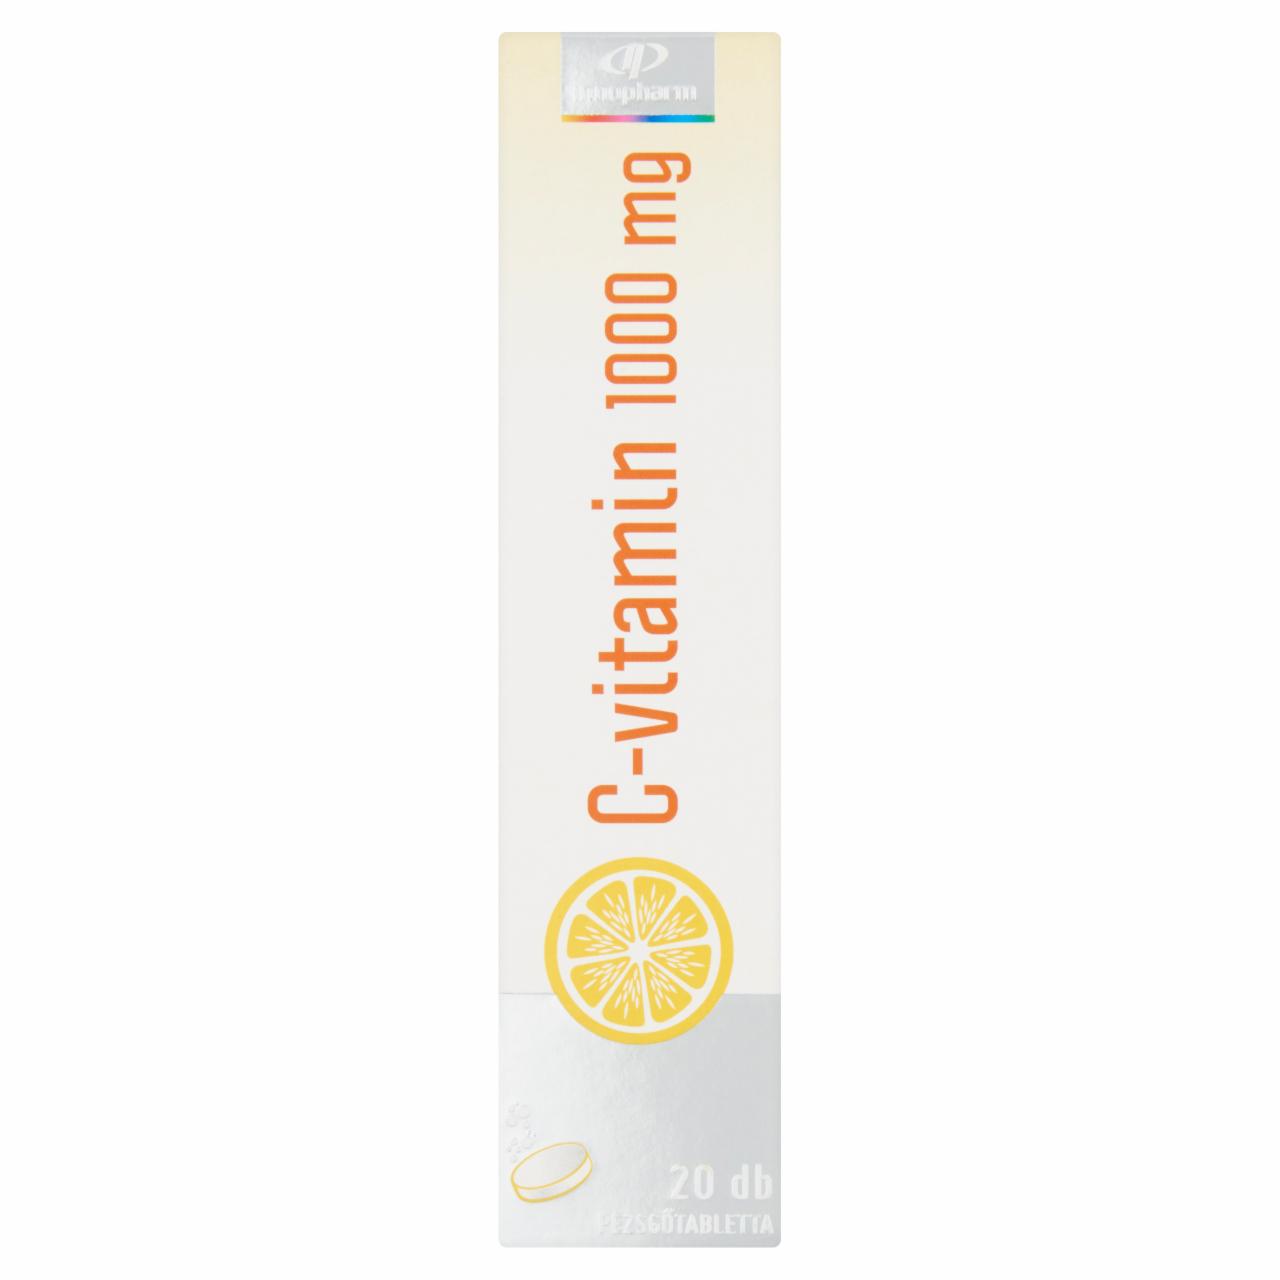 Képek - InnoPharm C-vitamin 1000 mg vérnarancs ízű étrend-kiegészítő pezsgőtabletta 20 db 84 g